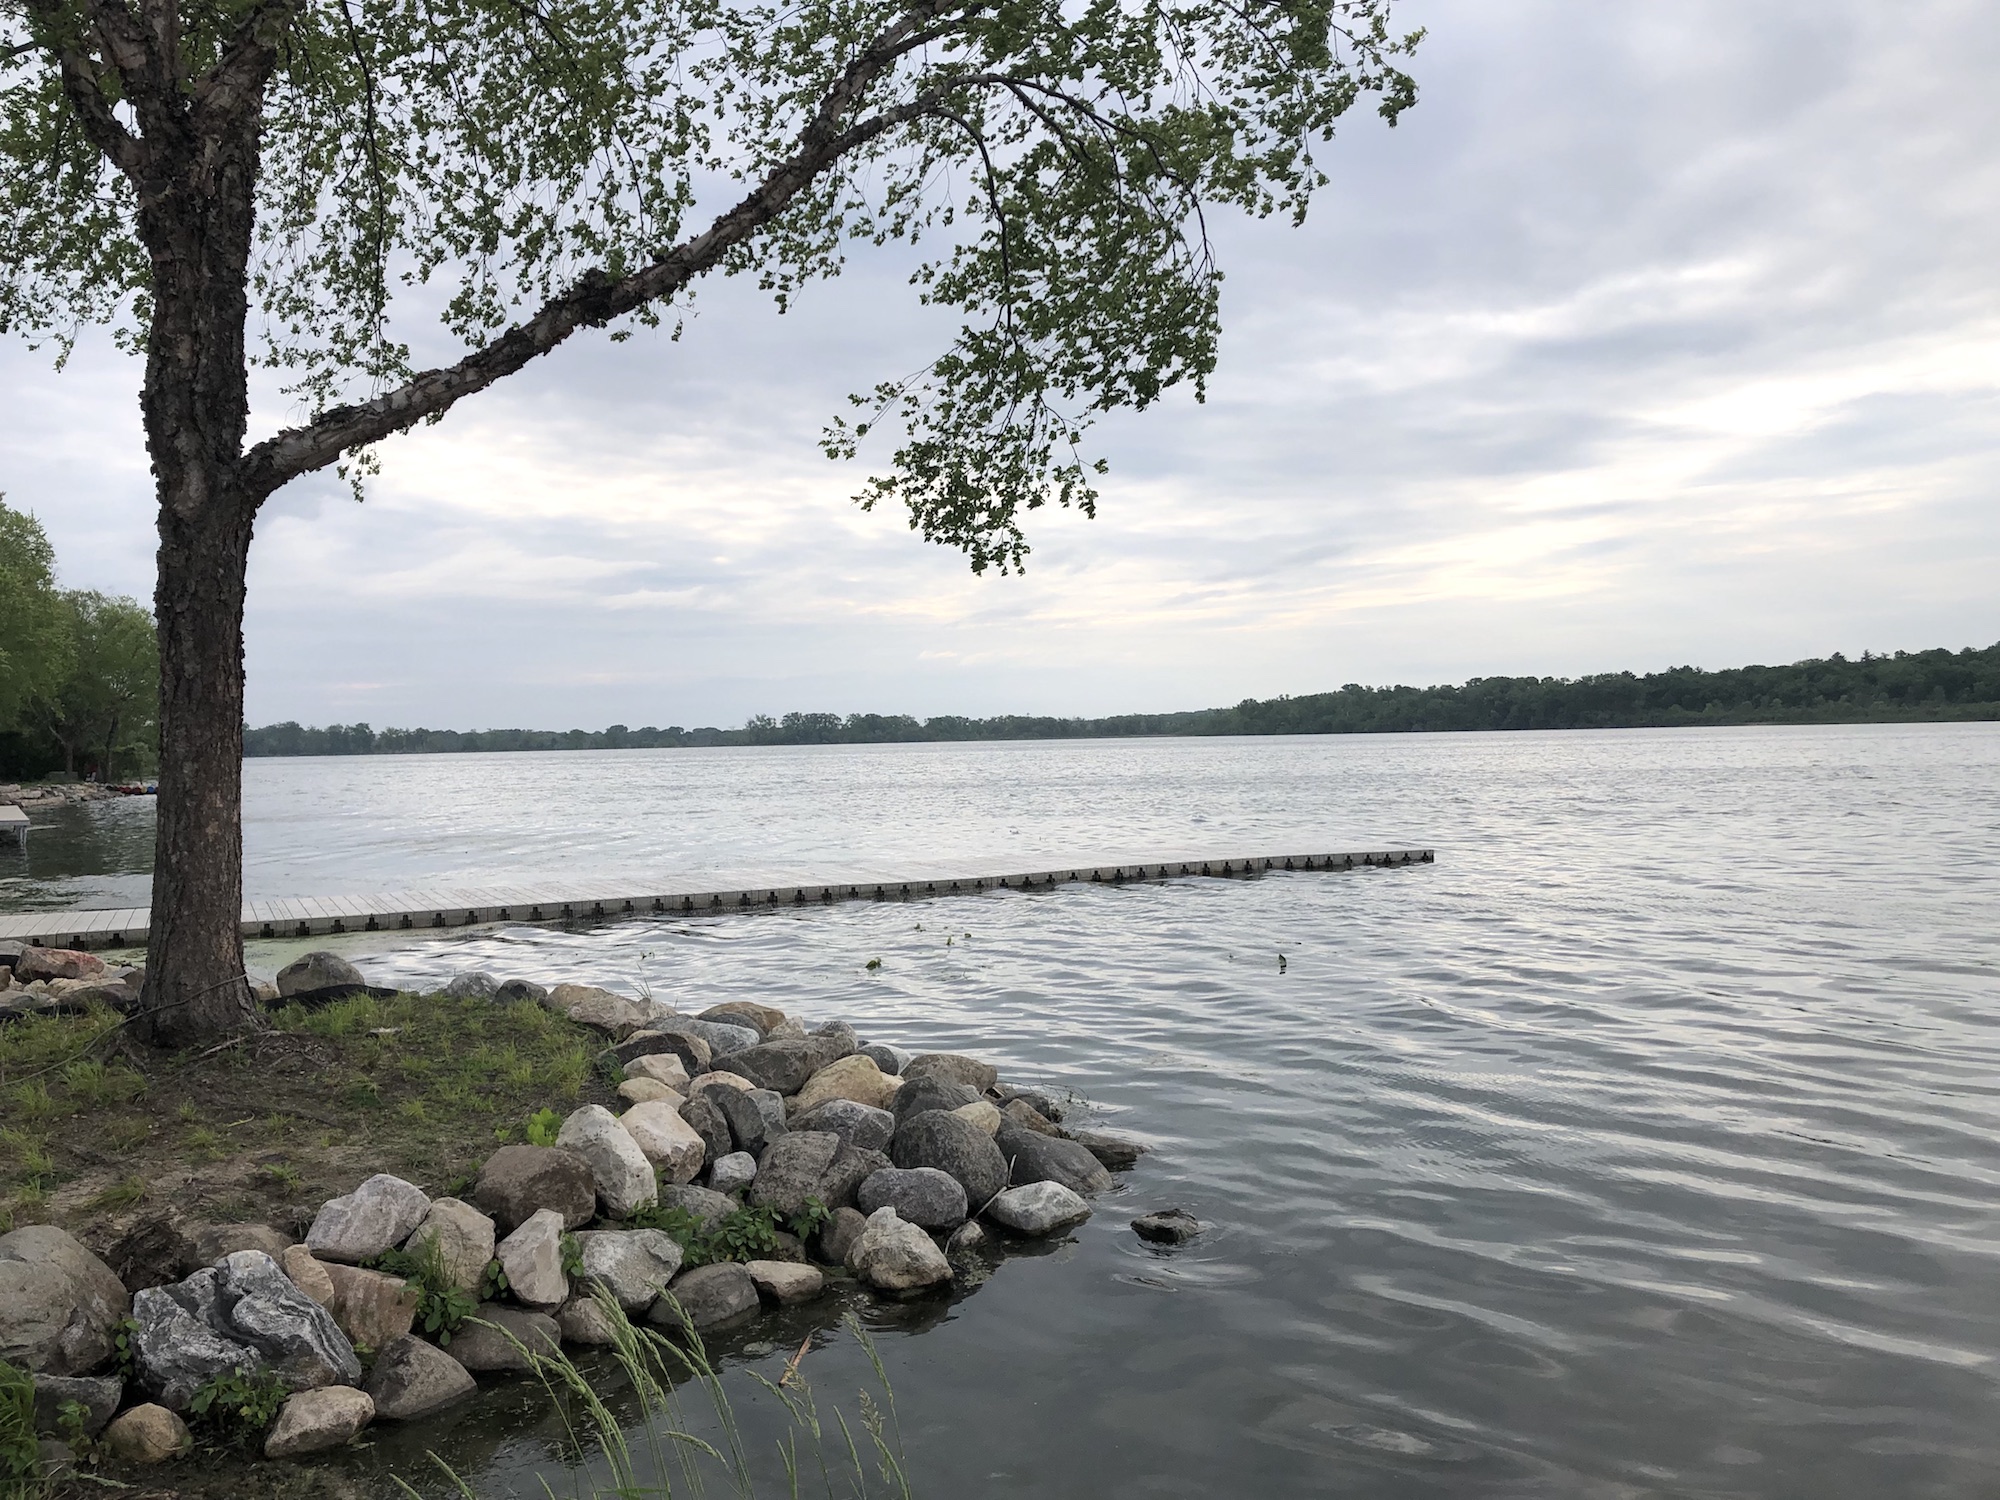 Lake Wingra on June 4, 2019.